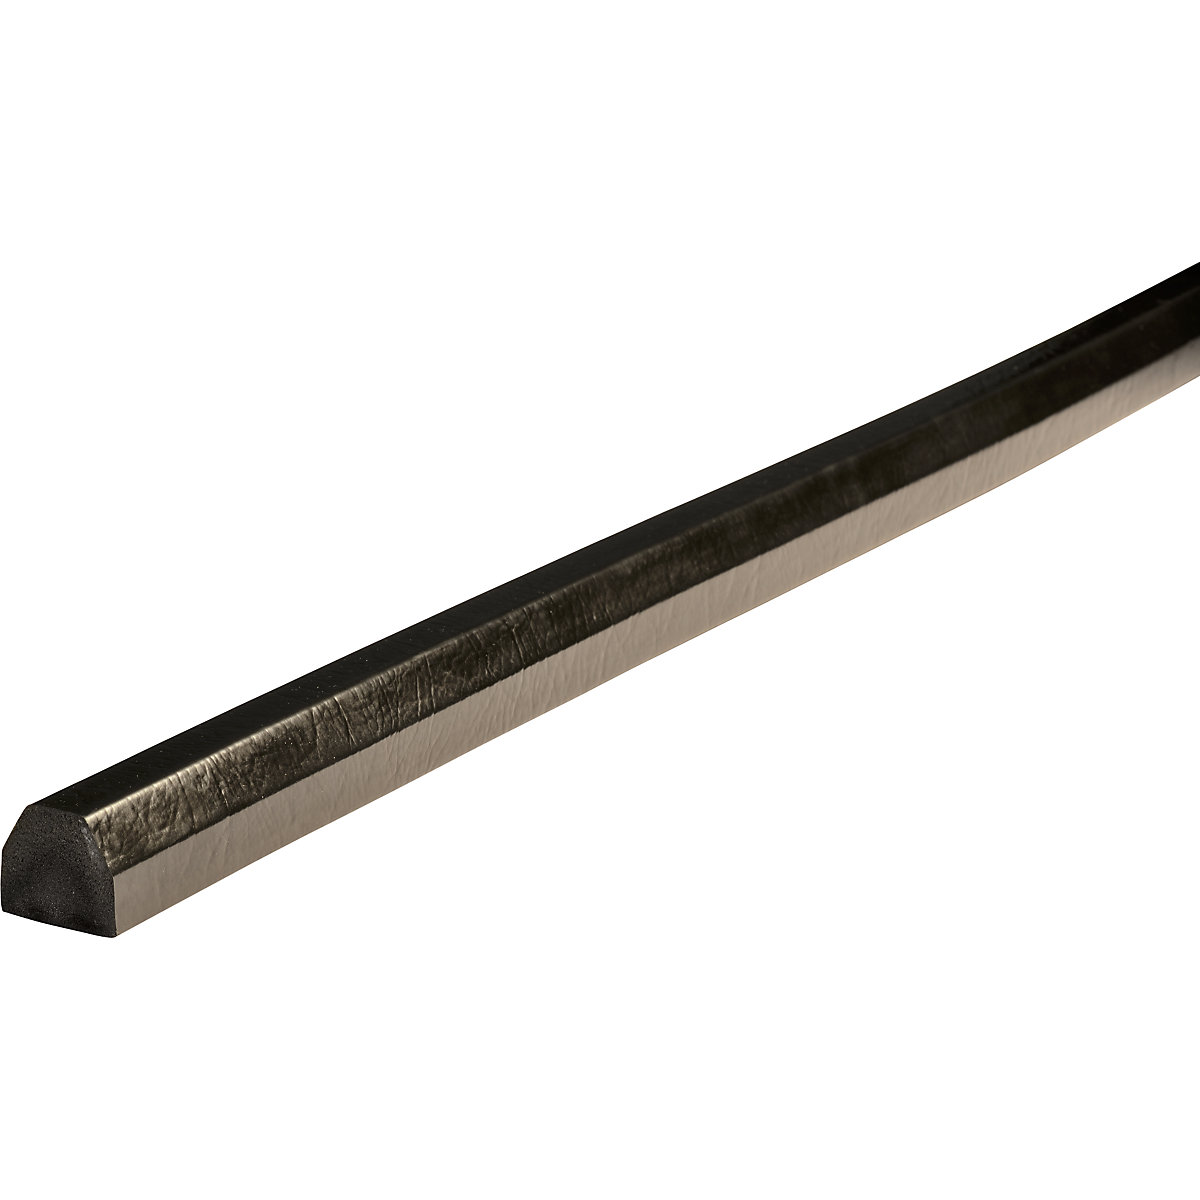 Protection des surfaces Knuffi® – SHG, type CC, 1 rouleau de 50 m, noir